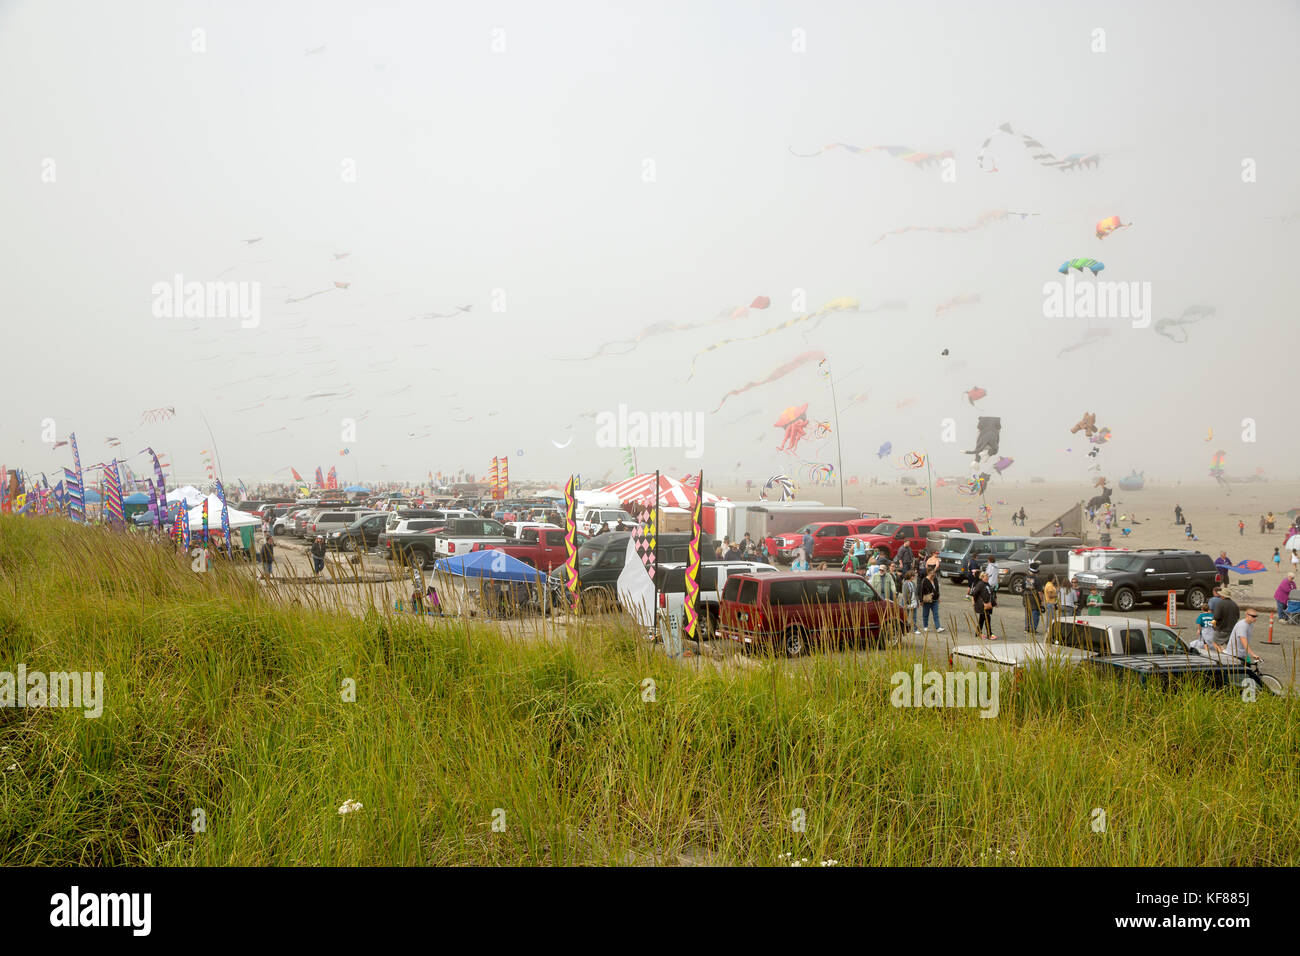 Usa, Washington State, Long Beach Halbinsel, international kite Festival, die Reihe von Lebensmittel- und Kite Anbieter ist auf der Kite Festival Stockfoto